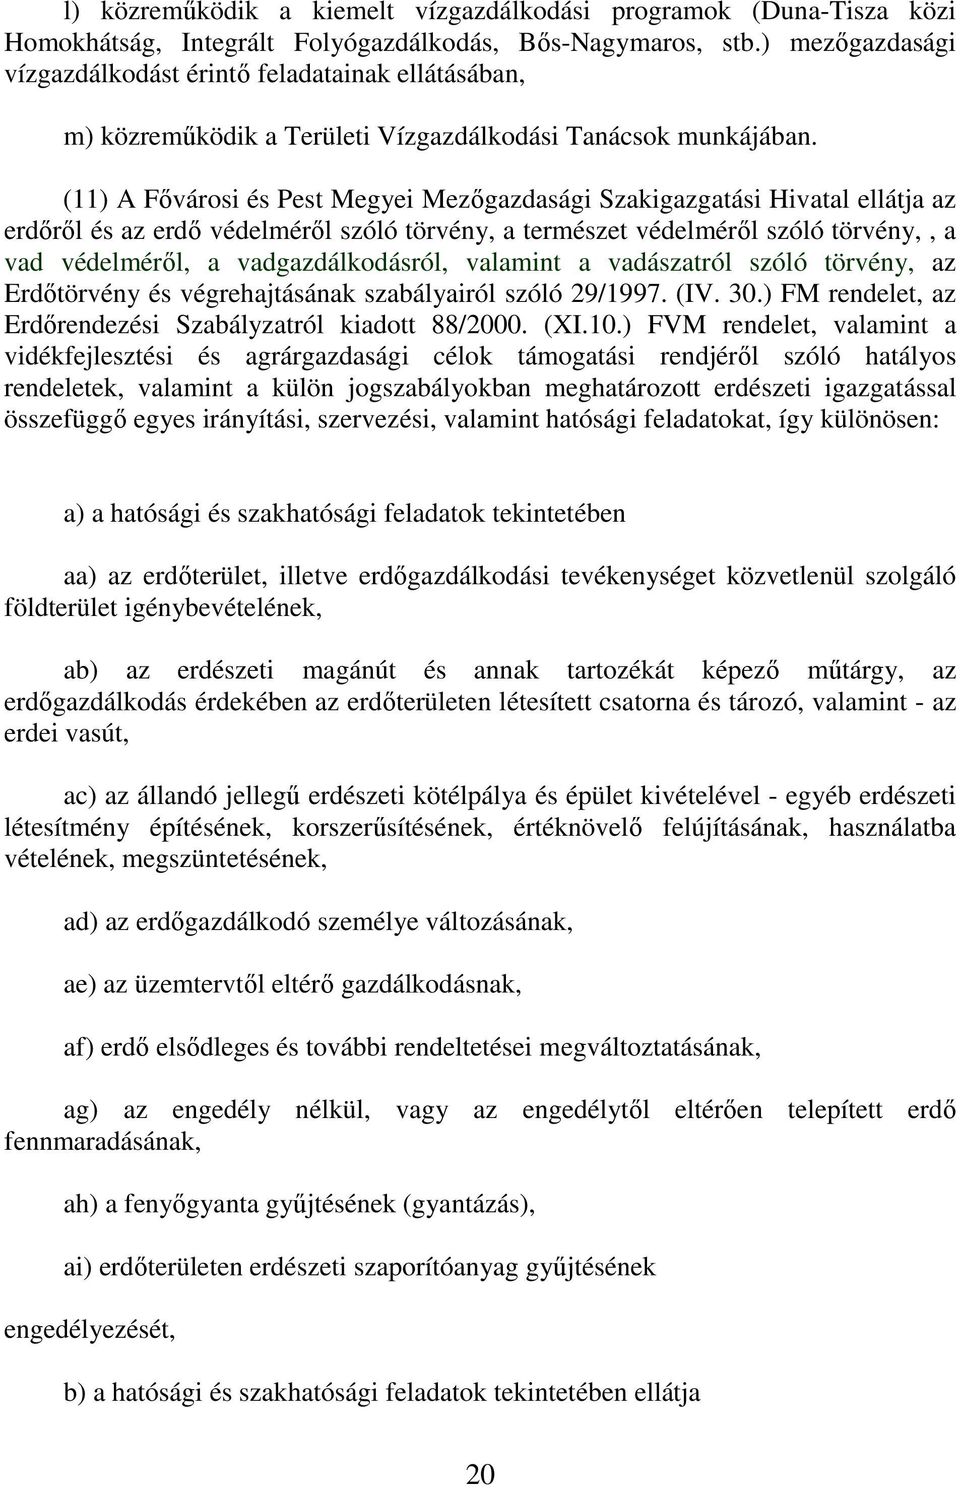 (11) A Fıvárosi és Pest Megyei Mezıgazdasági Szakigazgatási Hivatal ellátja az erdırıl és az erdı védelmérıl szóló törvény, a természet védelmérıl szóló törvény,, a vad védelmérıl, a